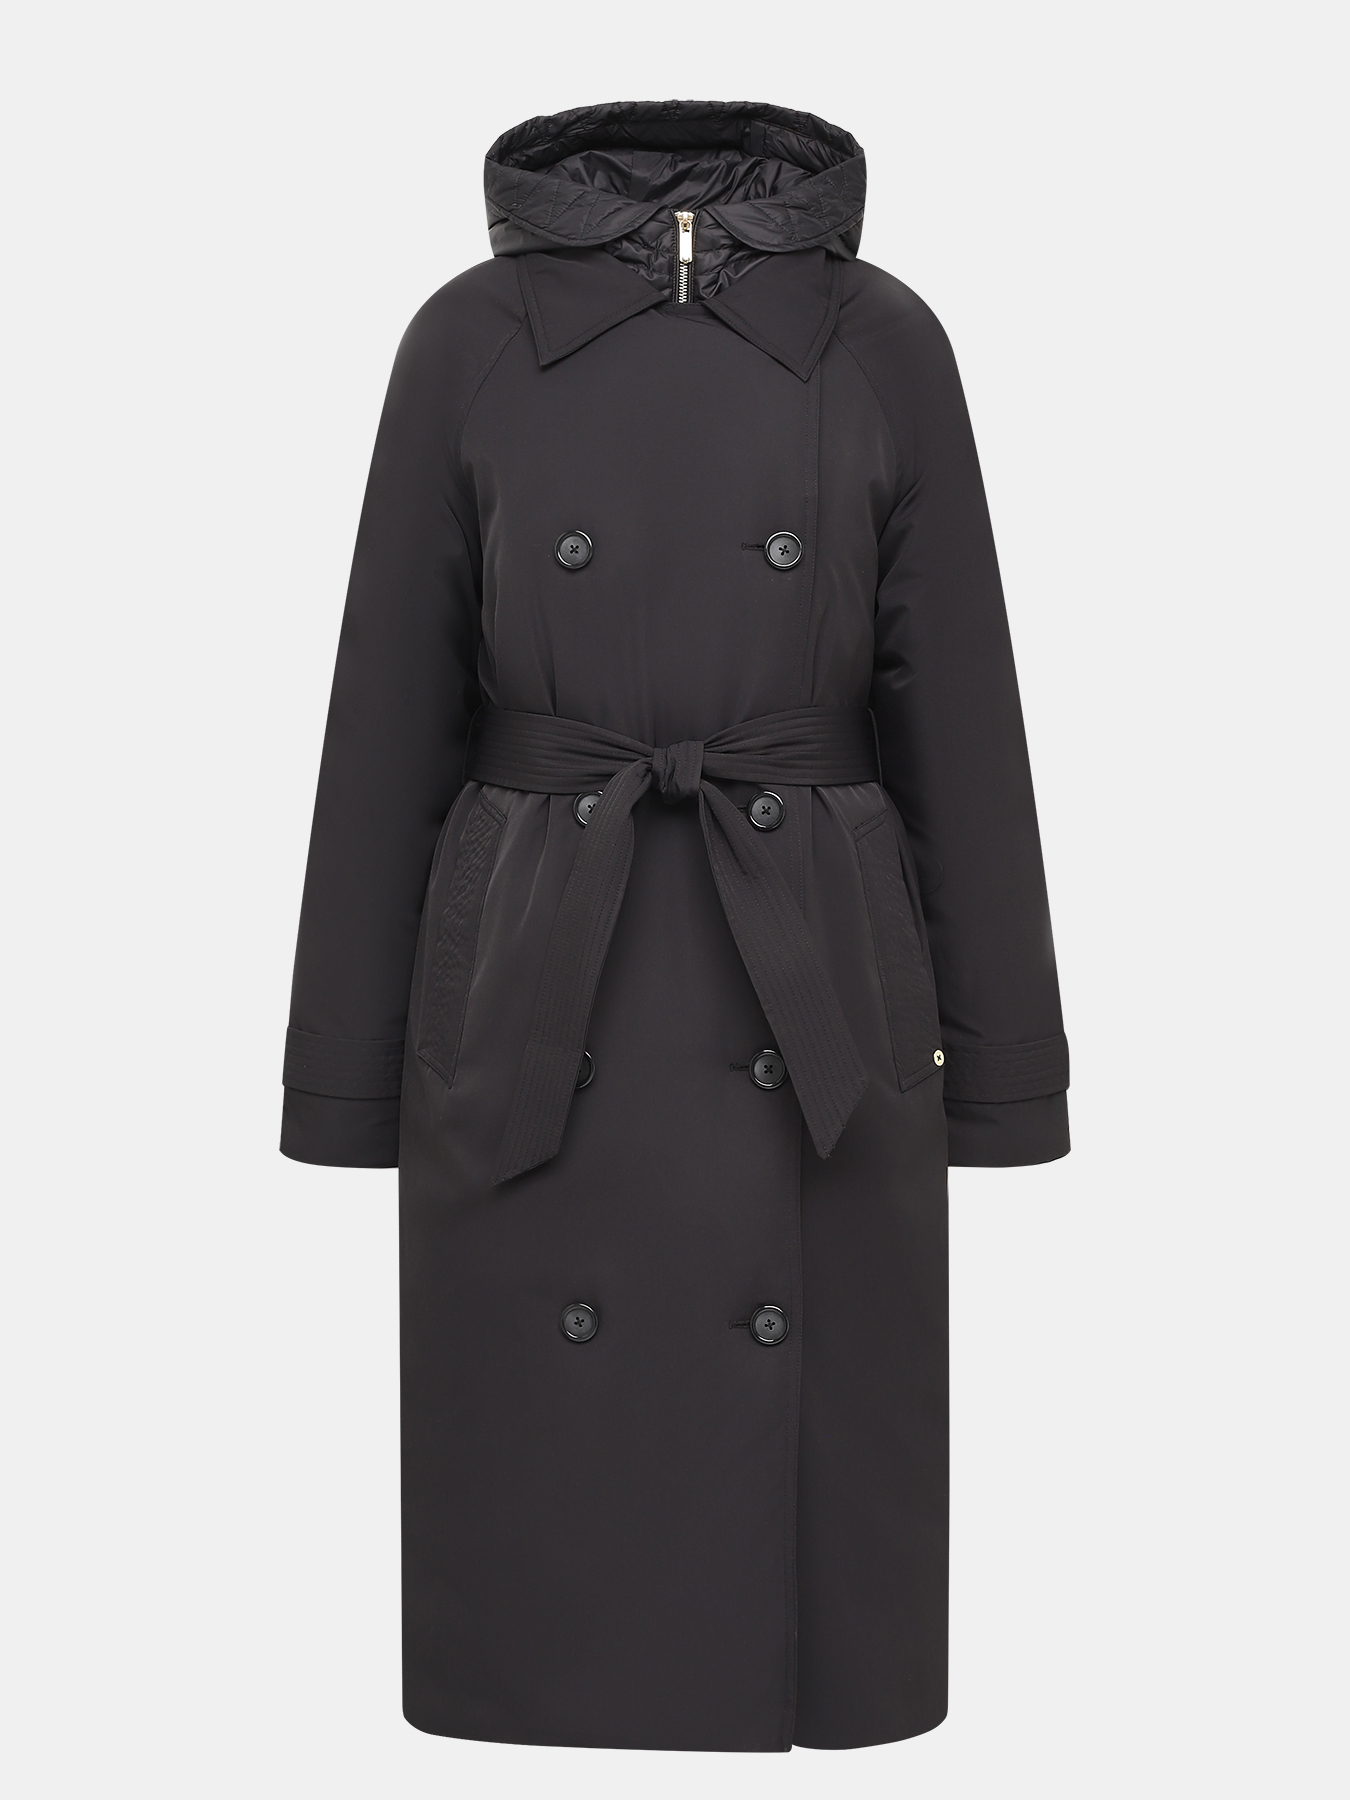 Пальто зимнее Pennyblack 421355-023, цвет черный, размер 46 - фото 1